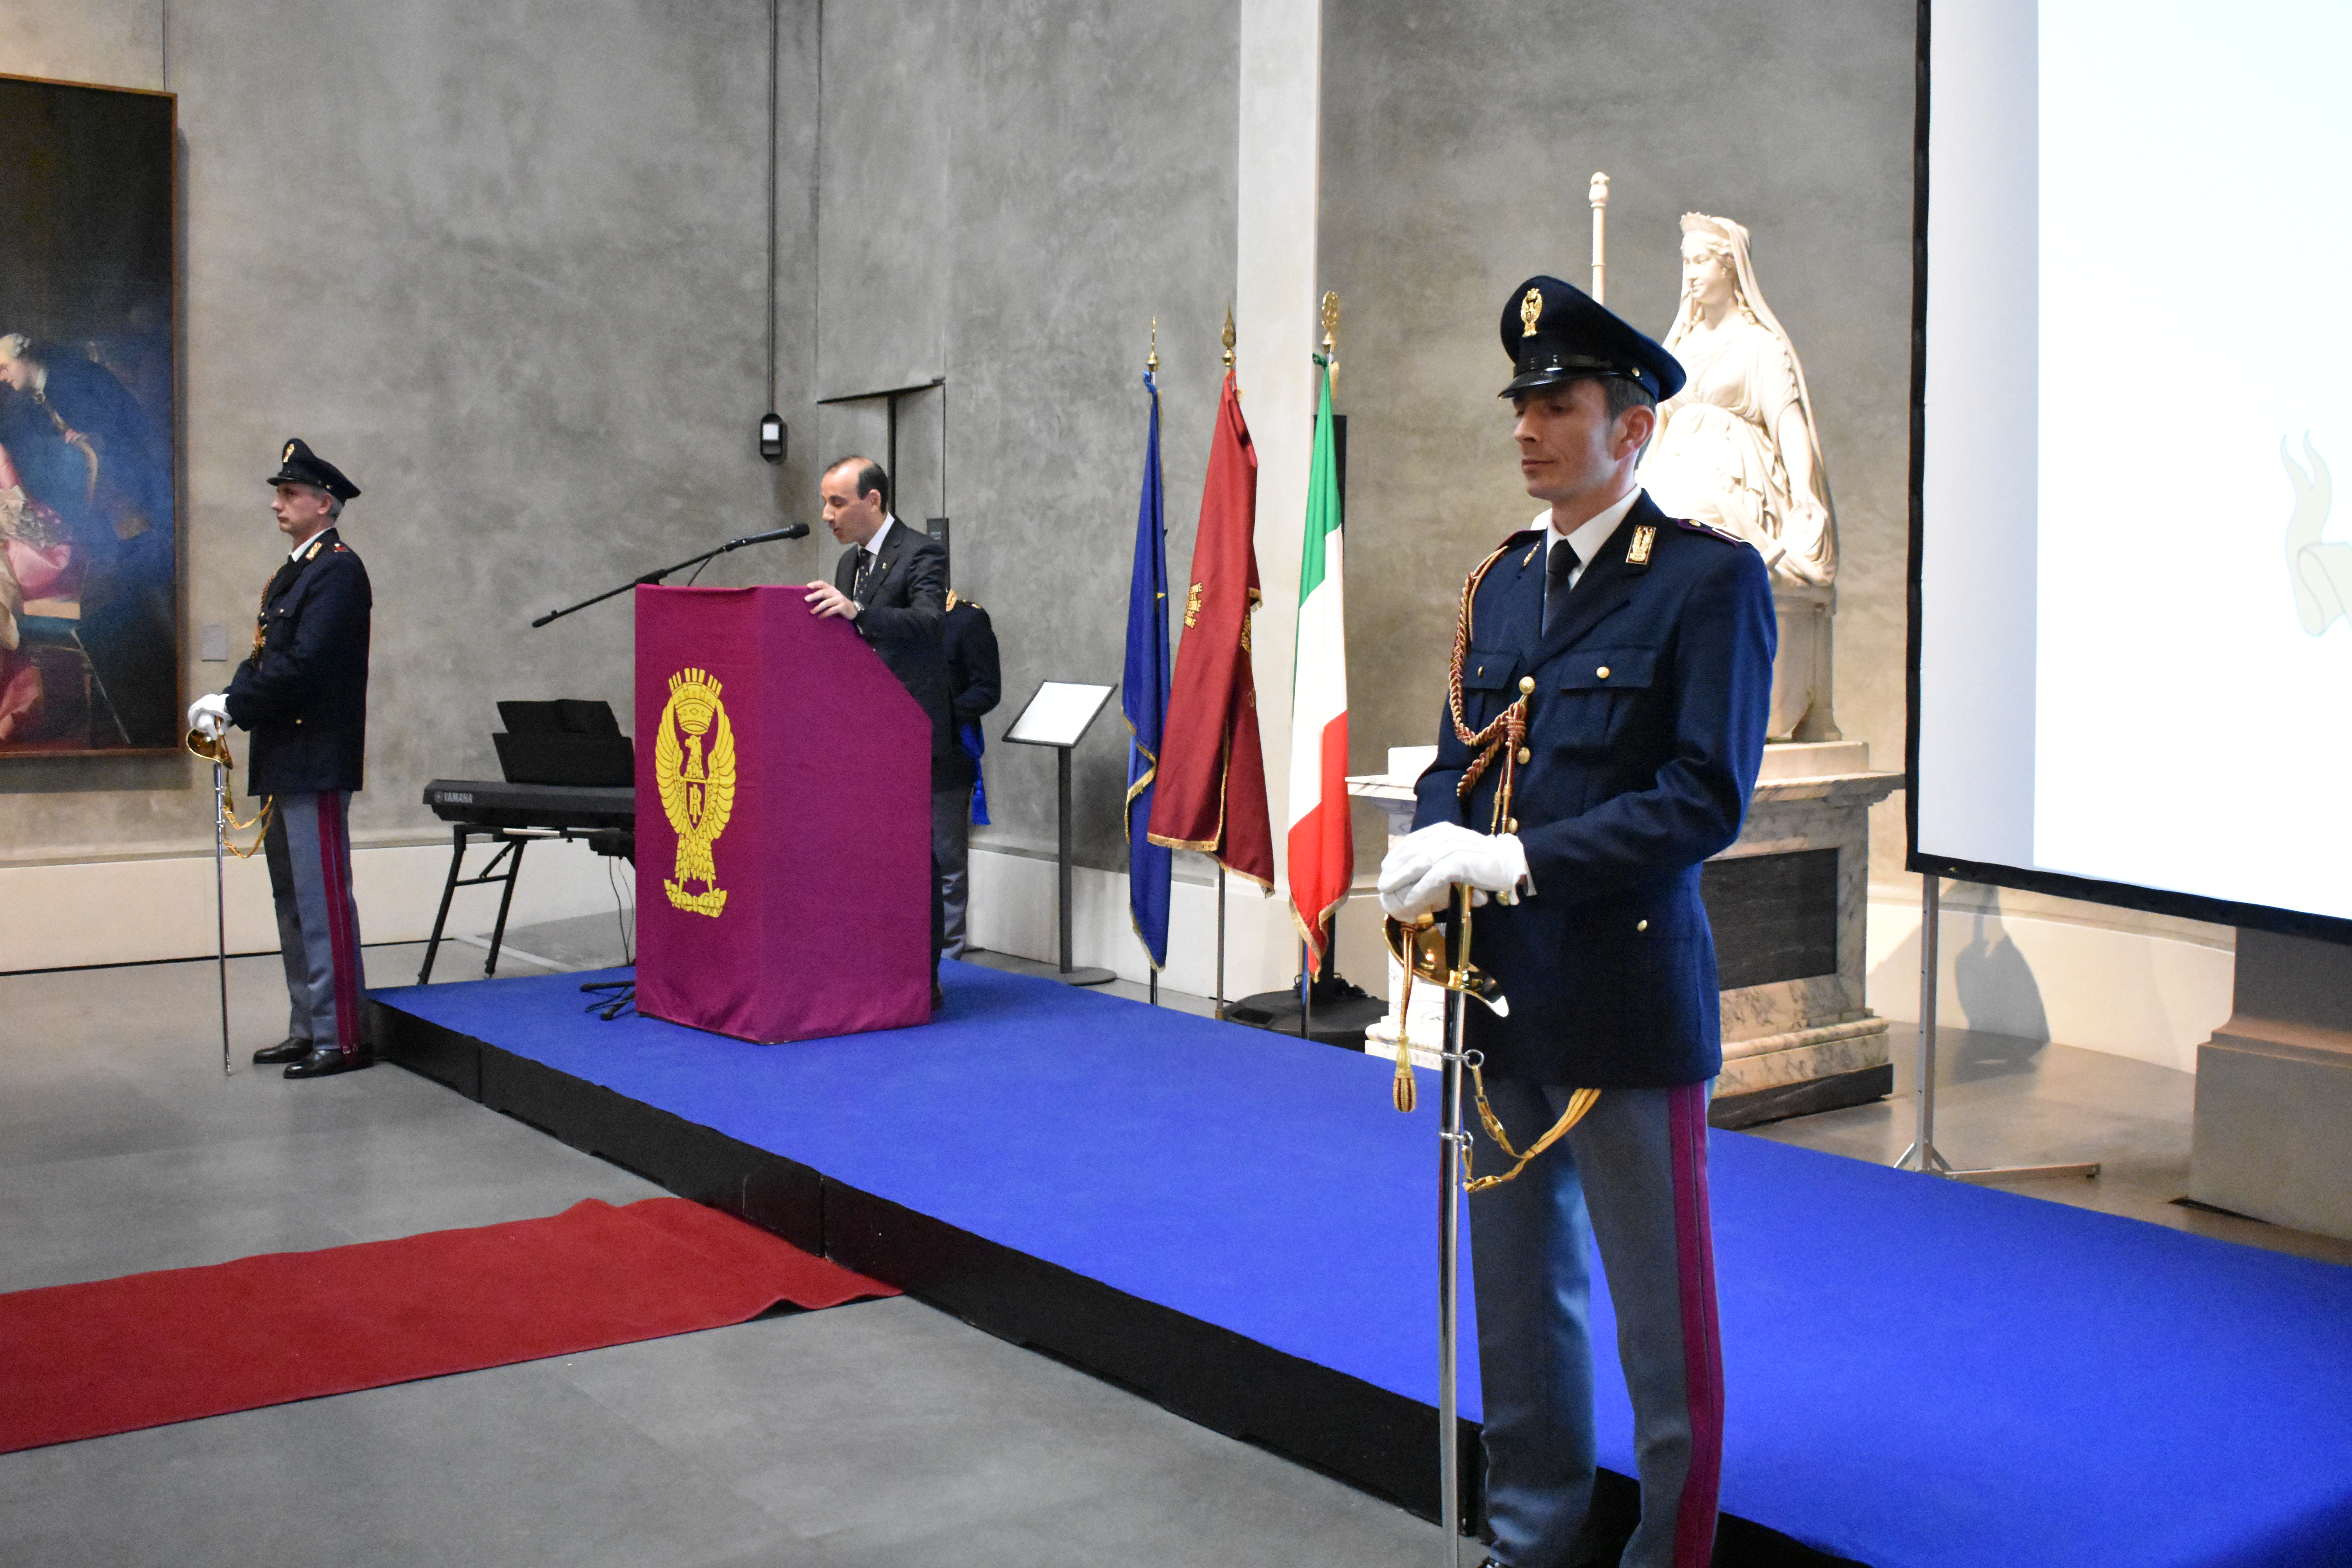 La cerimonia celebrativa del 167° Anniversario della fondazione della Polizia di Stato presso la Sala delle Colonne del Complesso Museale della Pilotta